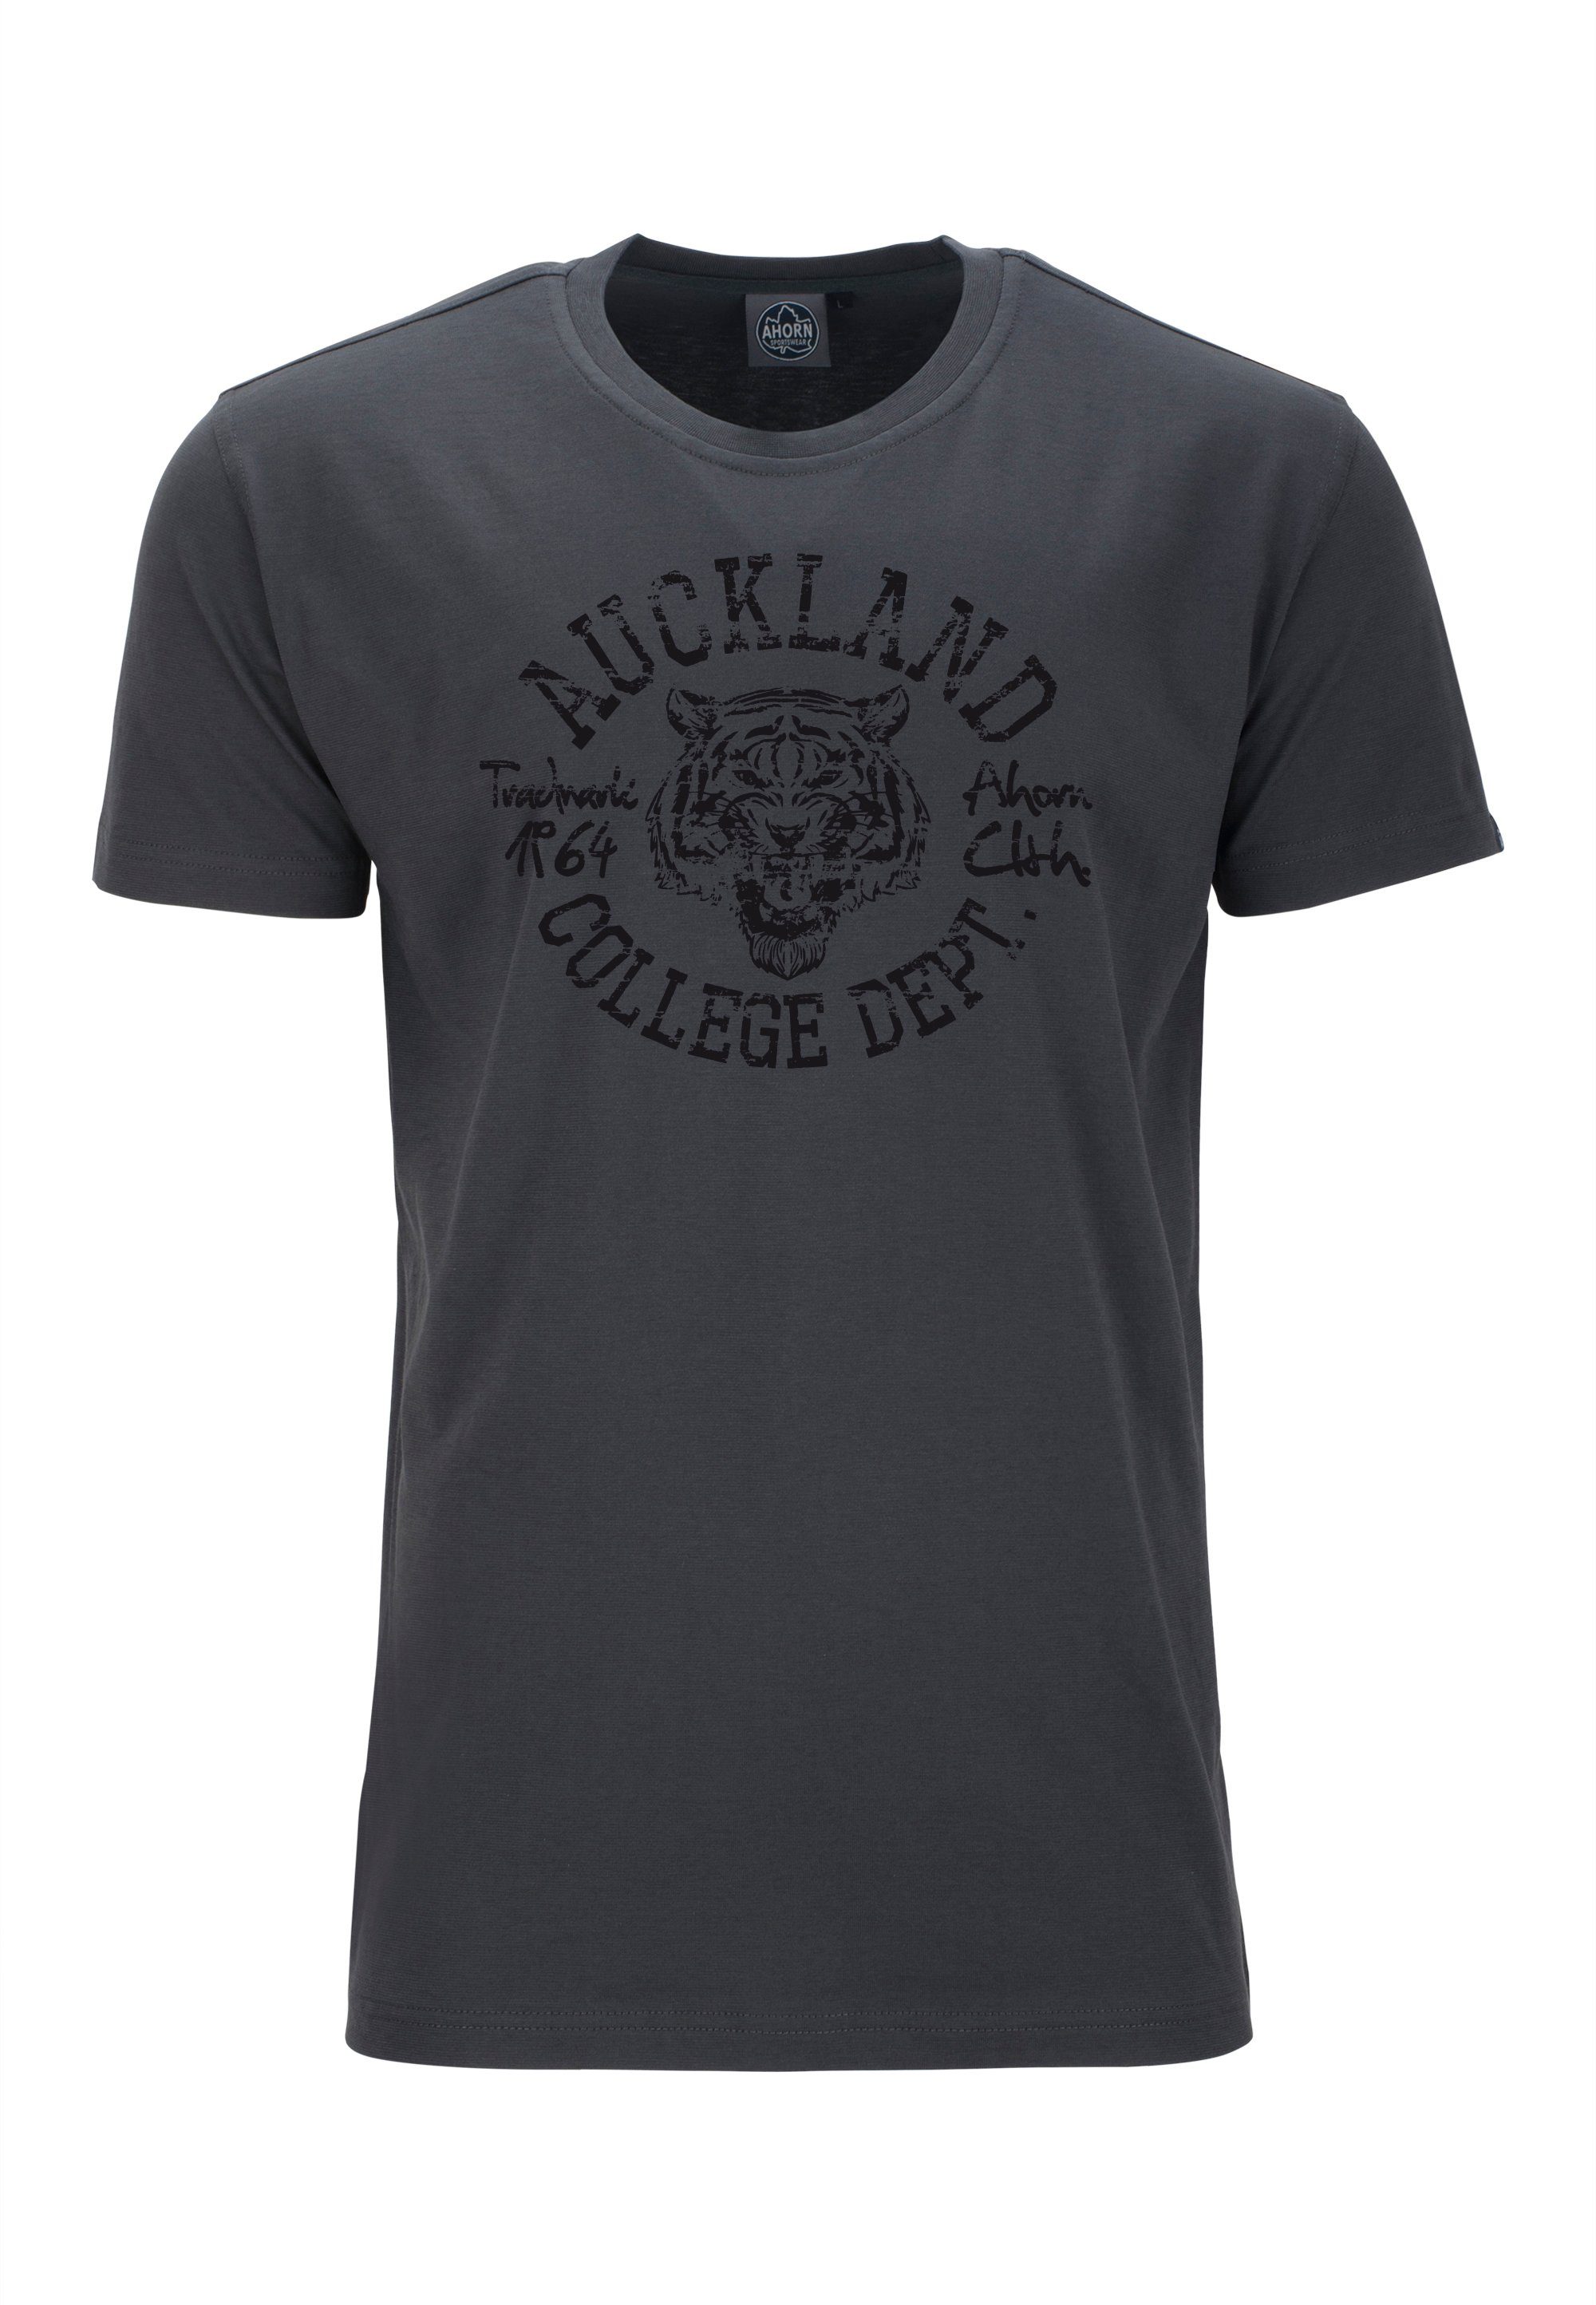 AHORN SPORTSWEAR T-Shirt AUCKLAND modischem Print mit grau TIGER_BLACK